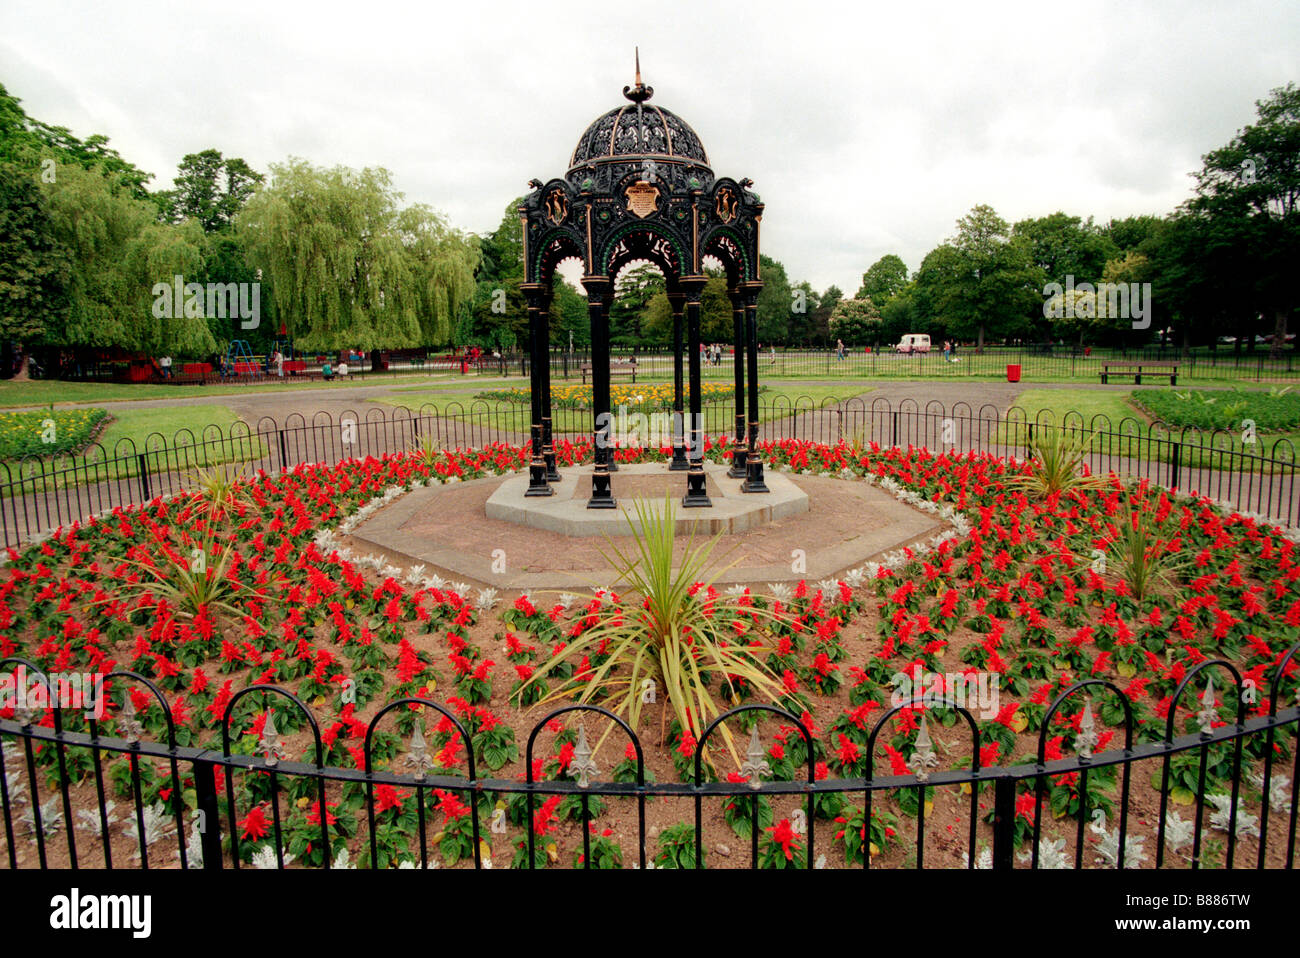 Victoria Park, Cardiff - Wikipedia